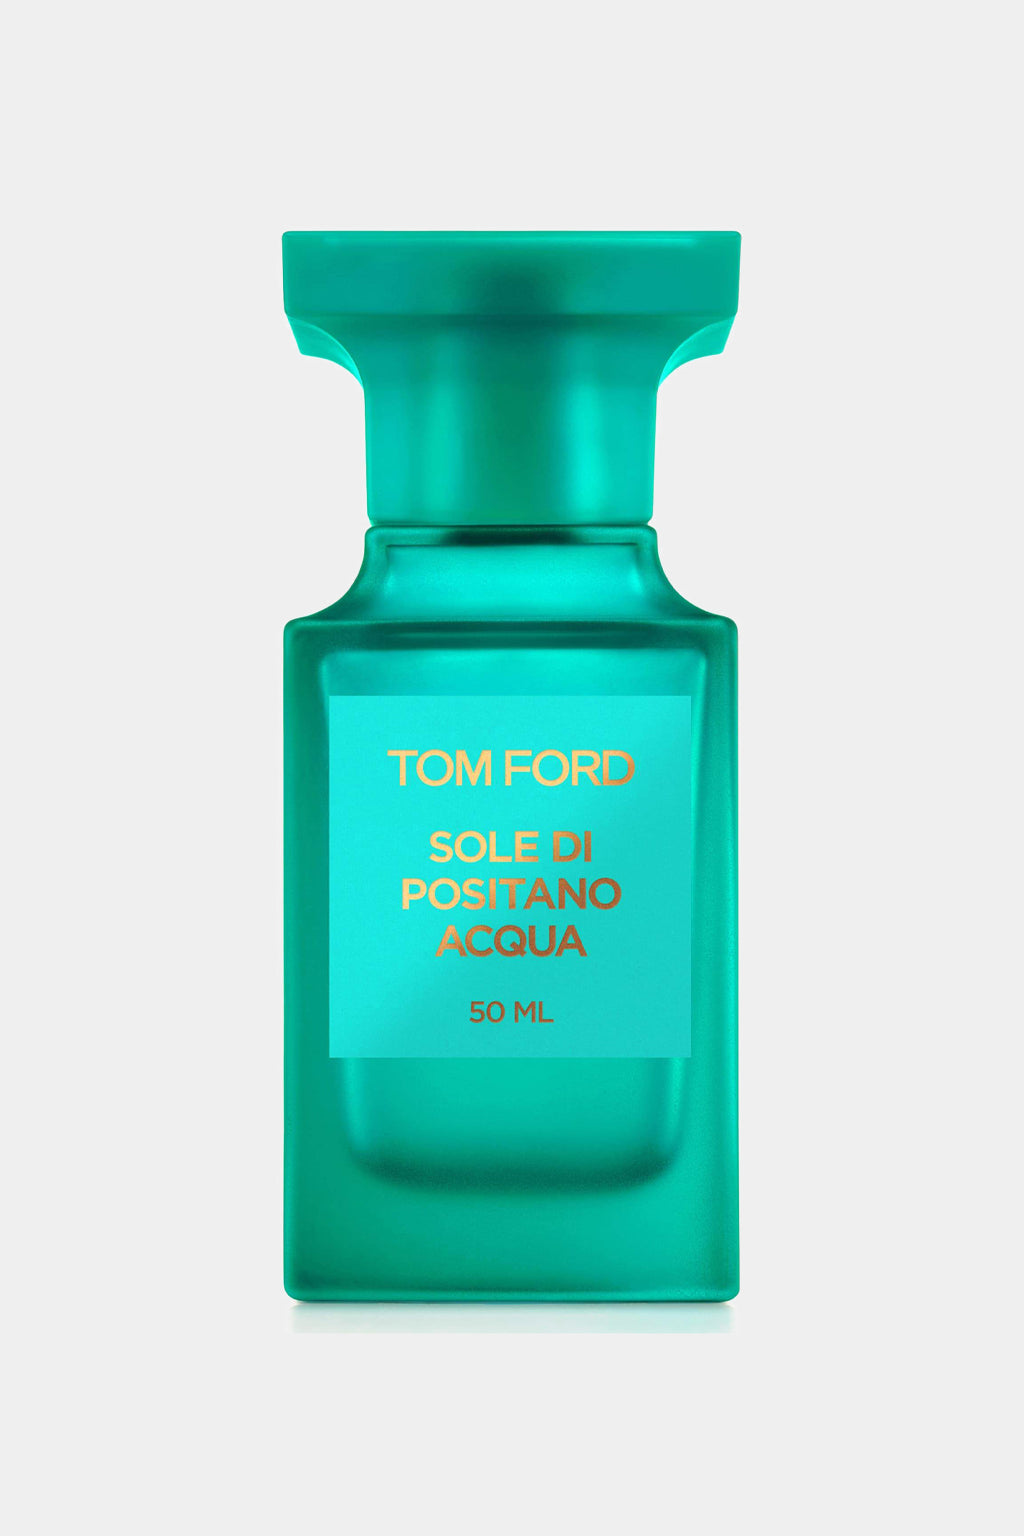 Tom Ford - Sole Di Positano Acqua Eau de Toilette